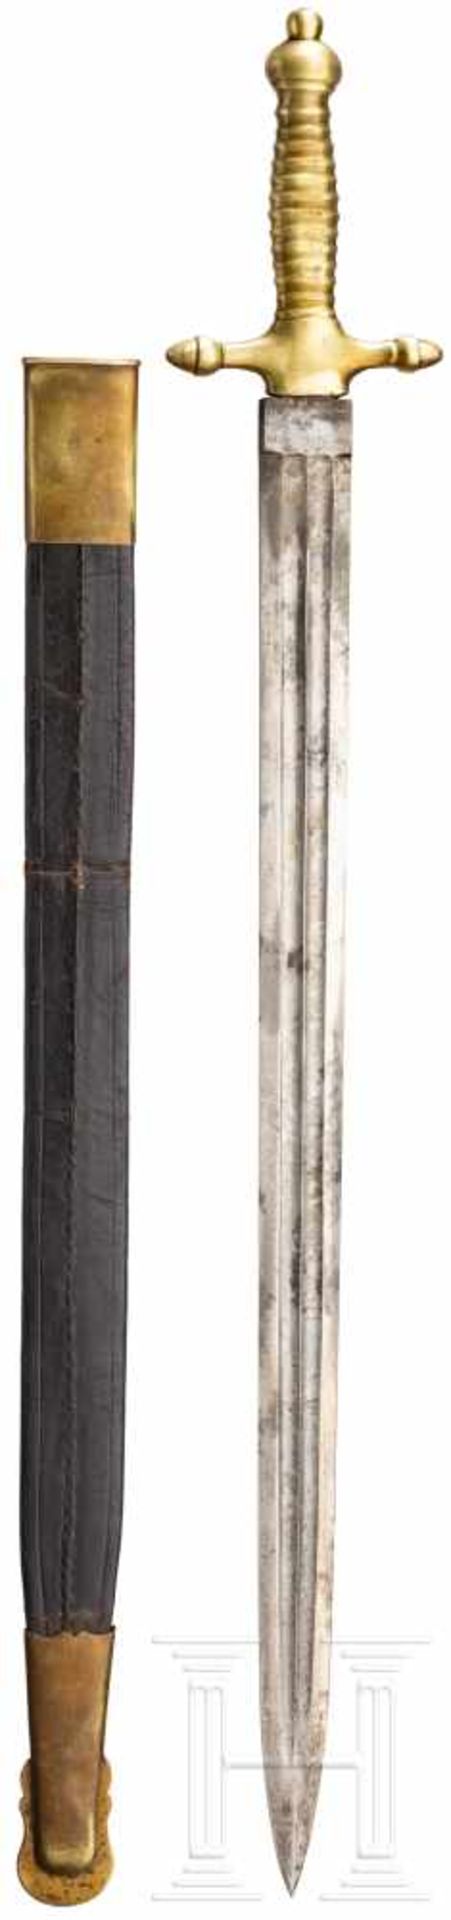 Fascine knife, Vienna, mid 19th centuryZweischneidige, beidseitig doppelt gekehlte Klinge. Einteilig - Bild 2 aus 2